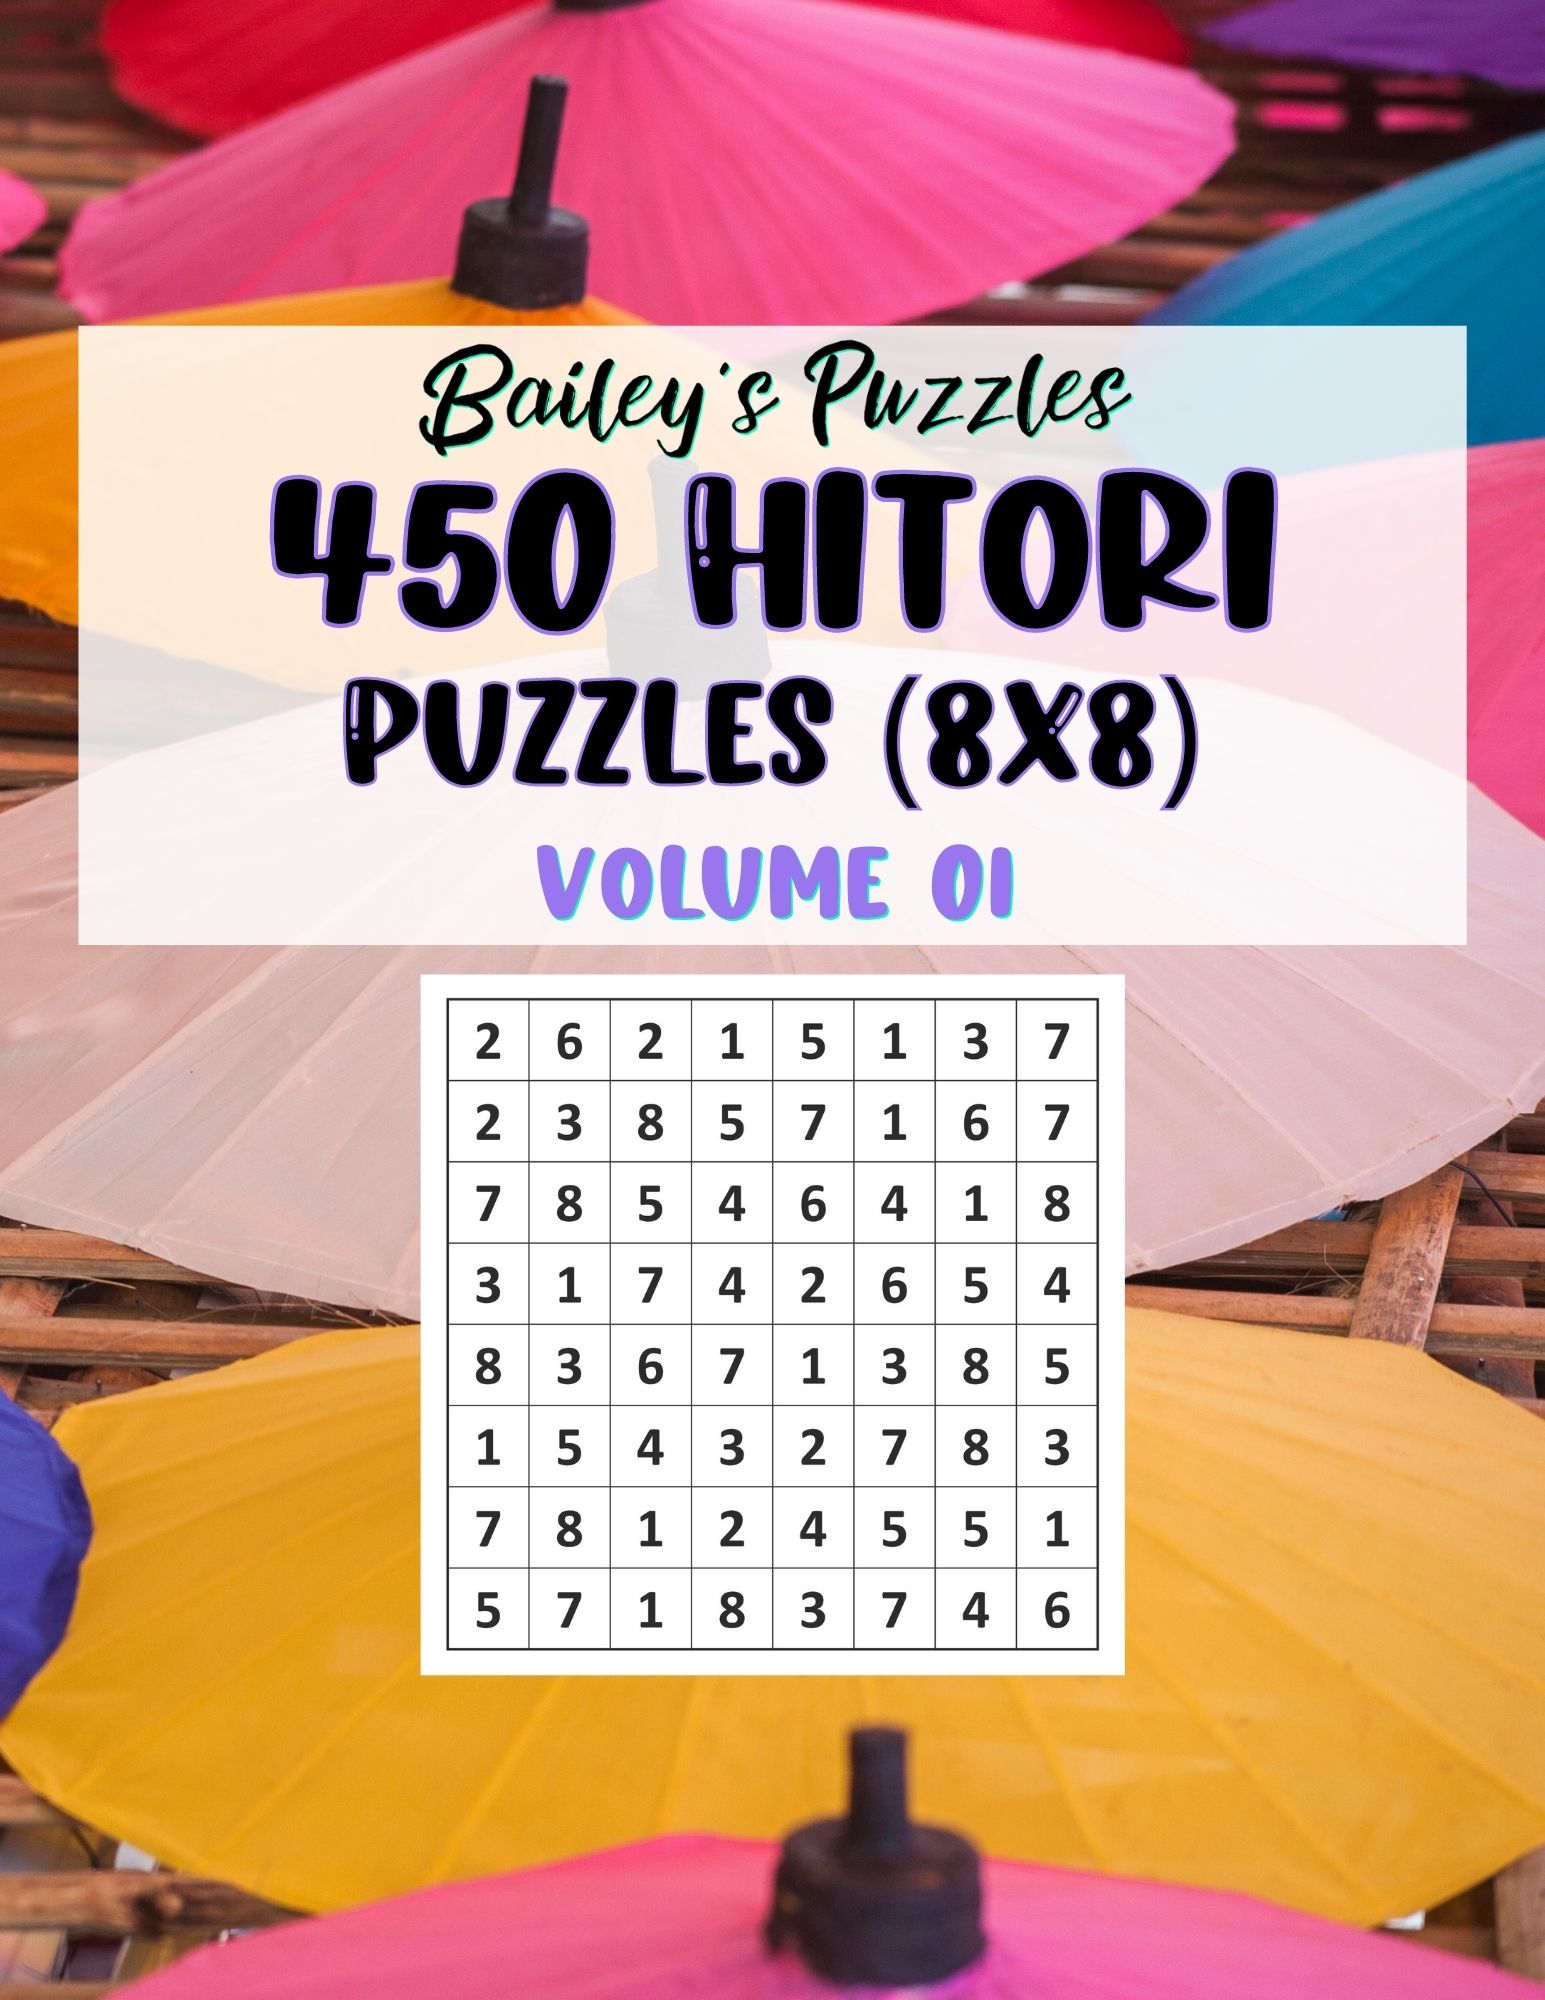 Buy Now: 450 Hitori Puzzles 8x8